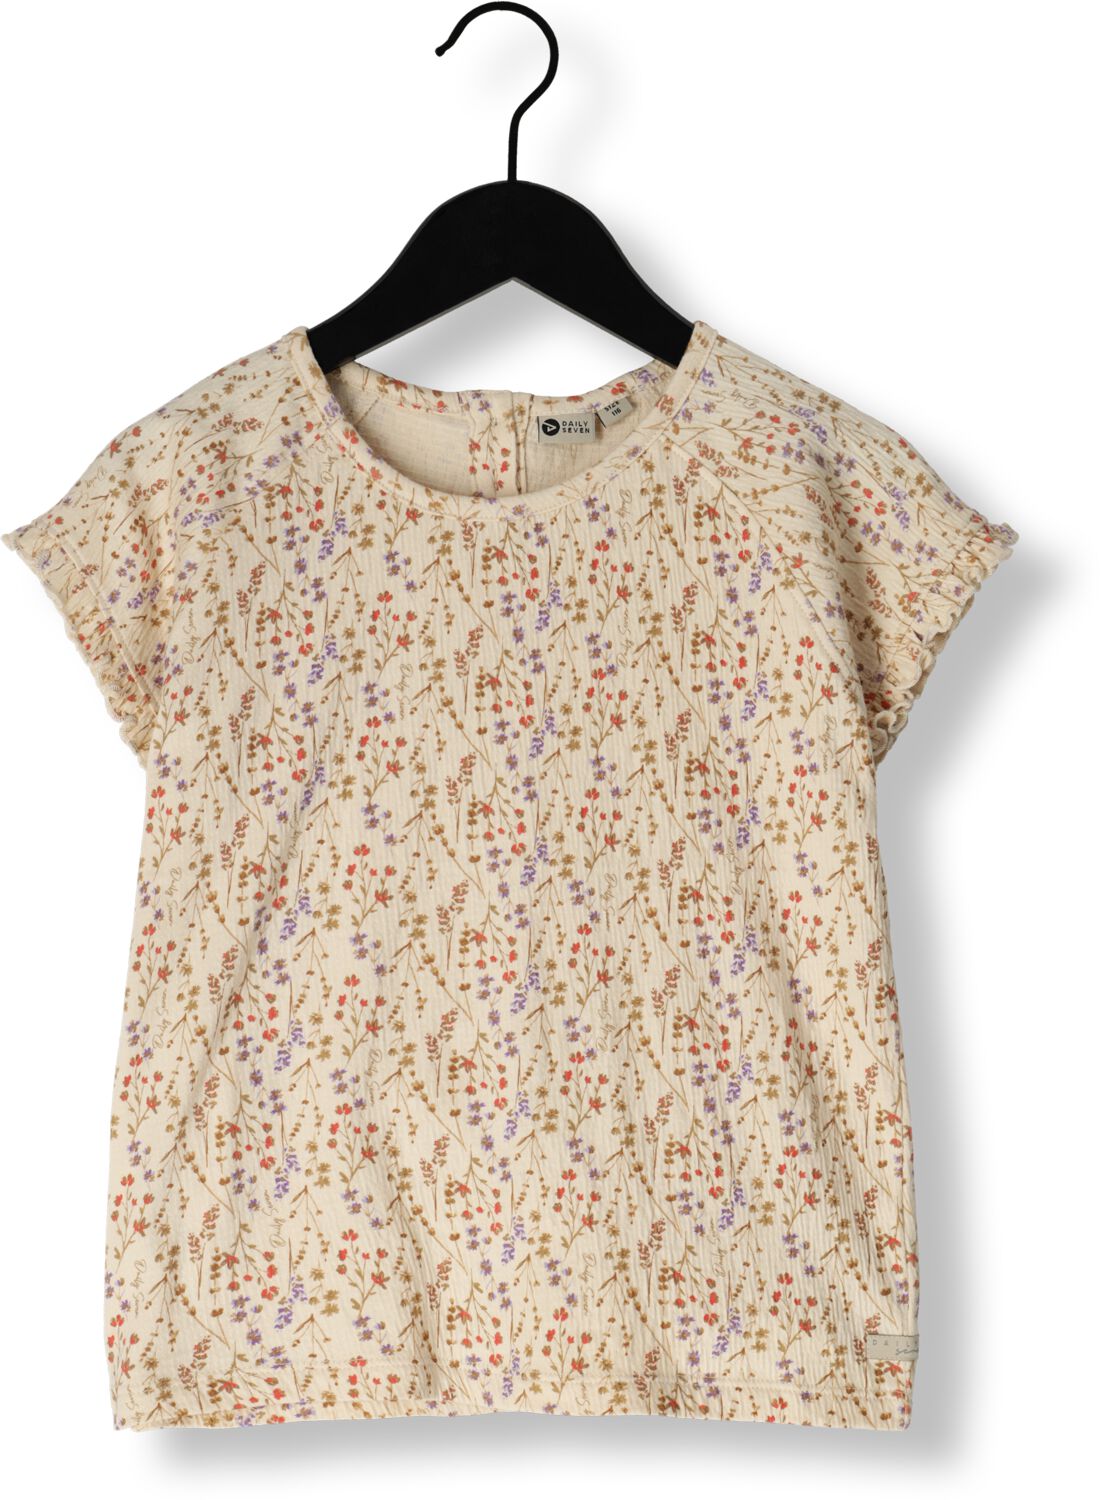 DAILY7 Meisjes Tops & T-shirts T-shirt Structure Mille Fleur Camel